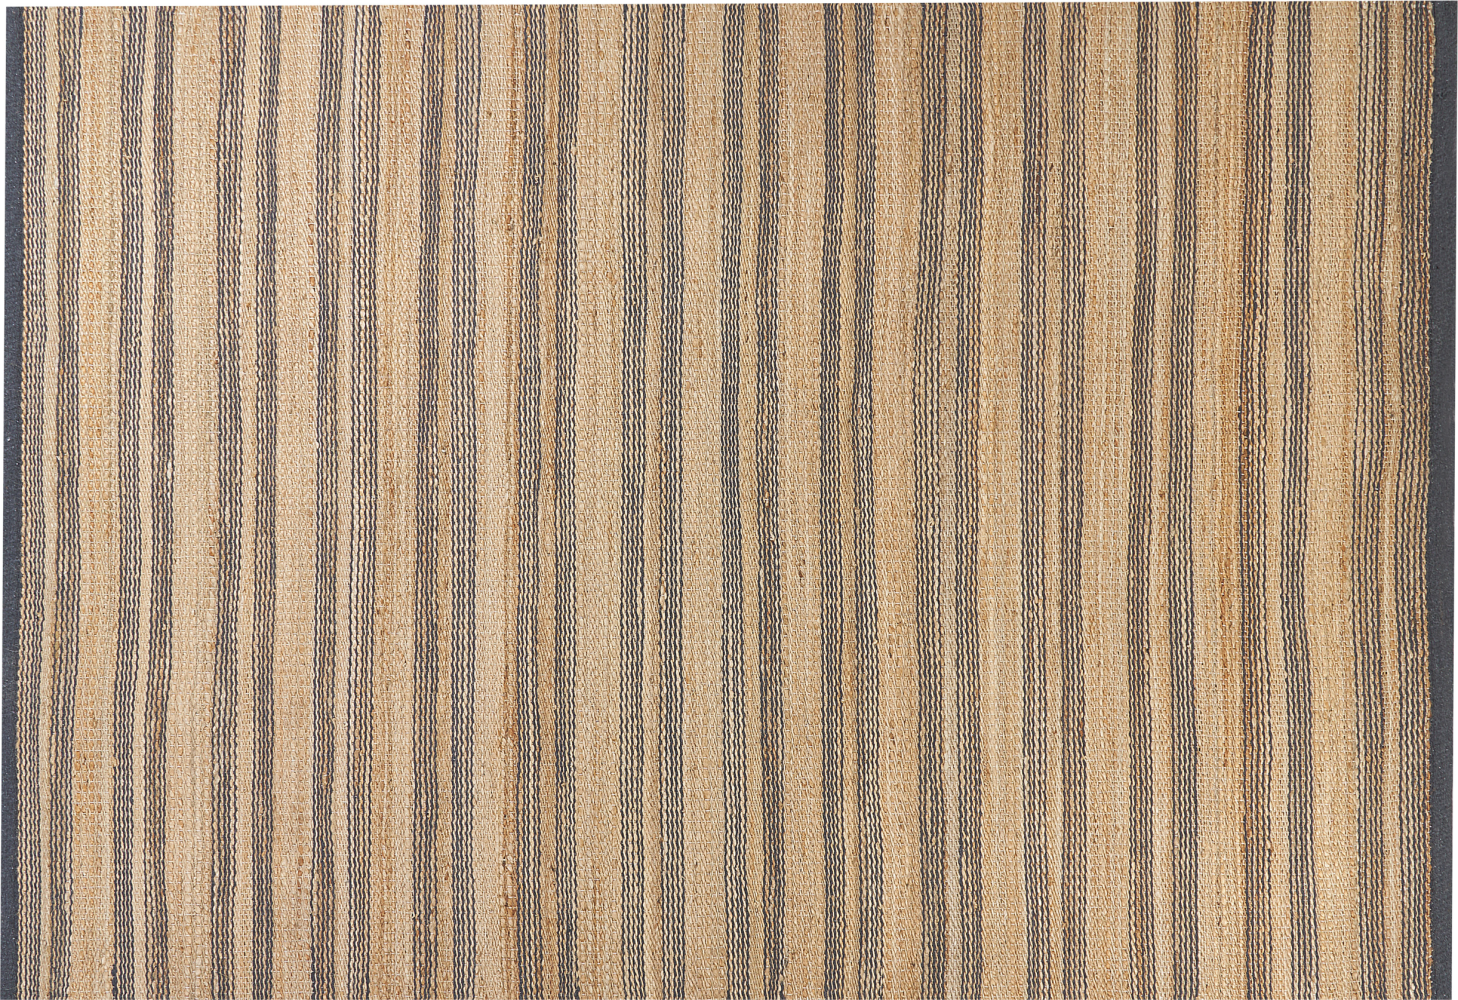 Teppich Jute beige grau 160 x 230 cm Streifenmuster Kurzflor zweiseitig BUDHO Bild 1